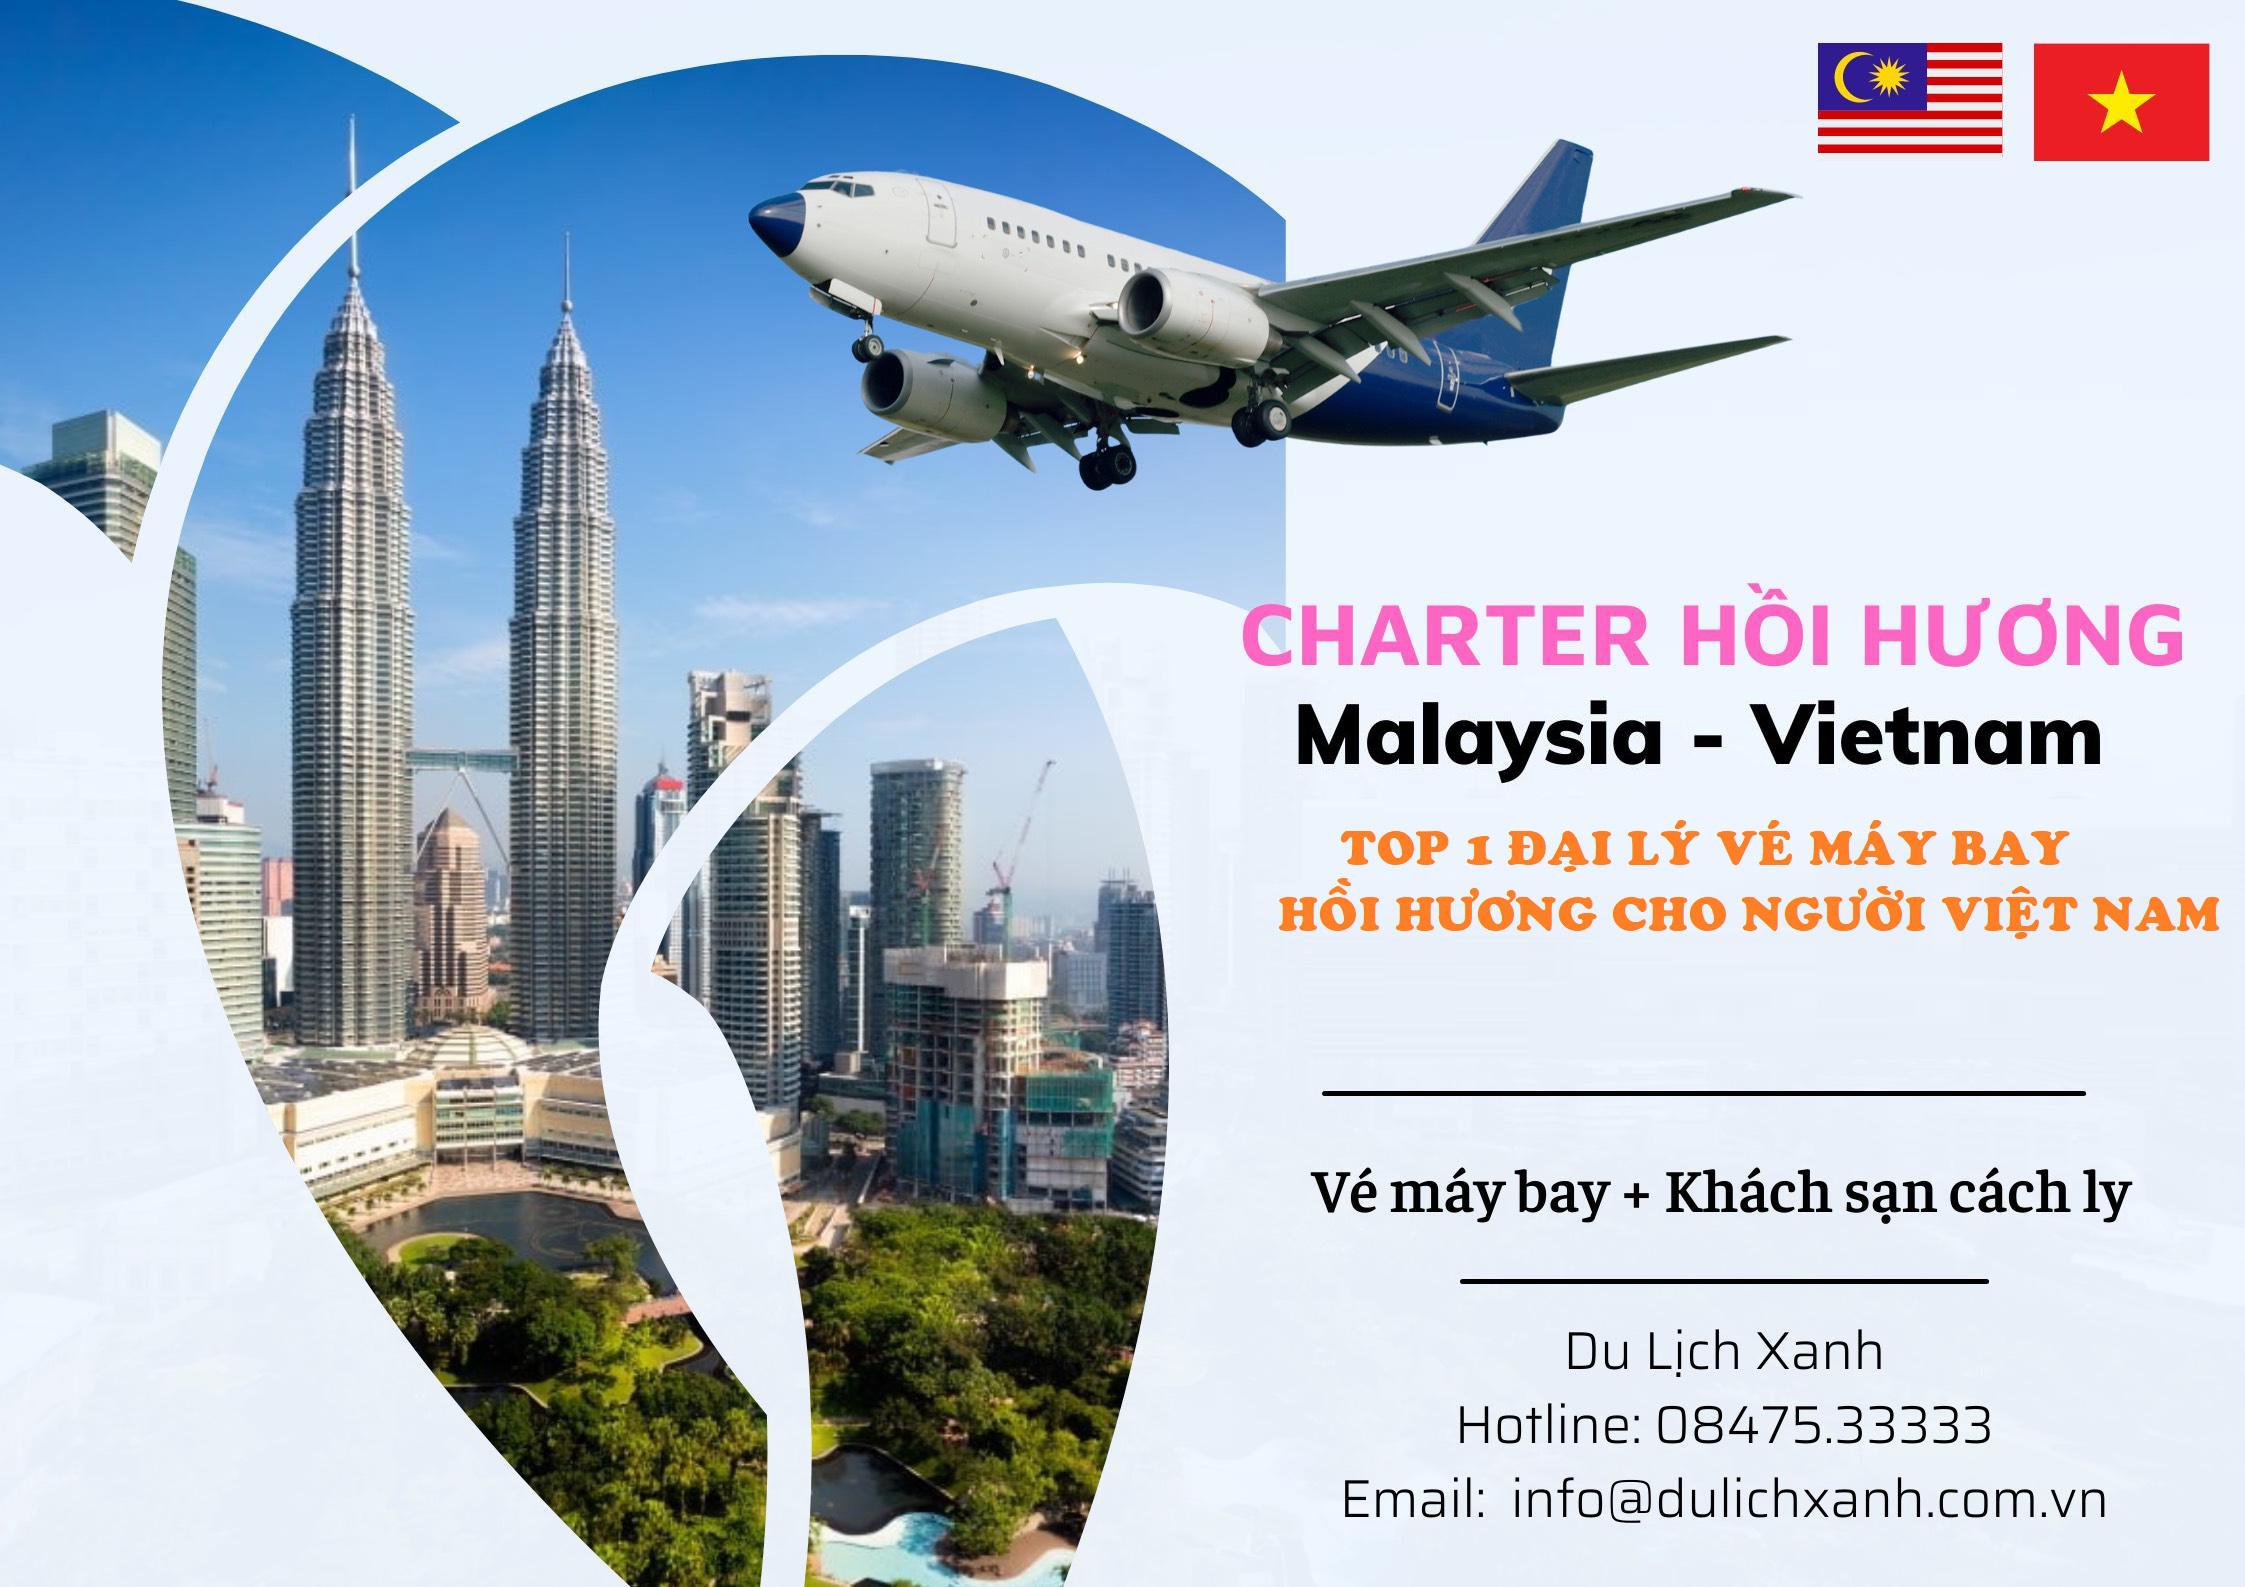 Đặt vé máy bay Hồi hương, Chuyên gia từ Malaysia về Việt Nam | Lịch bay tháng 2 và 3 năm 2022